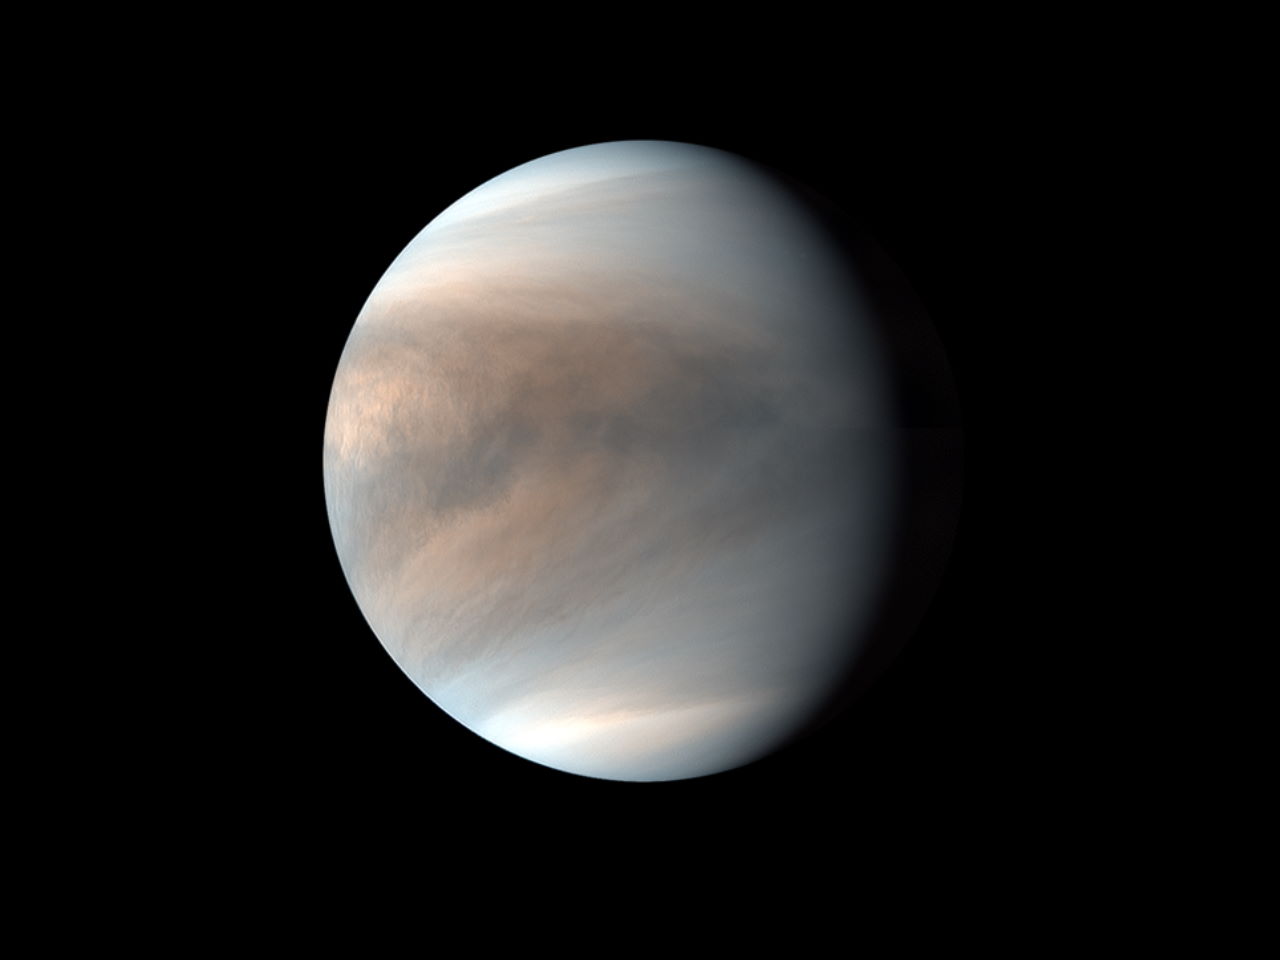 Зображення Венери, отримане японською орбітальною станцією «Акацукі». JAXA